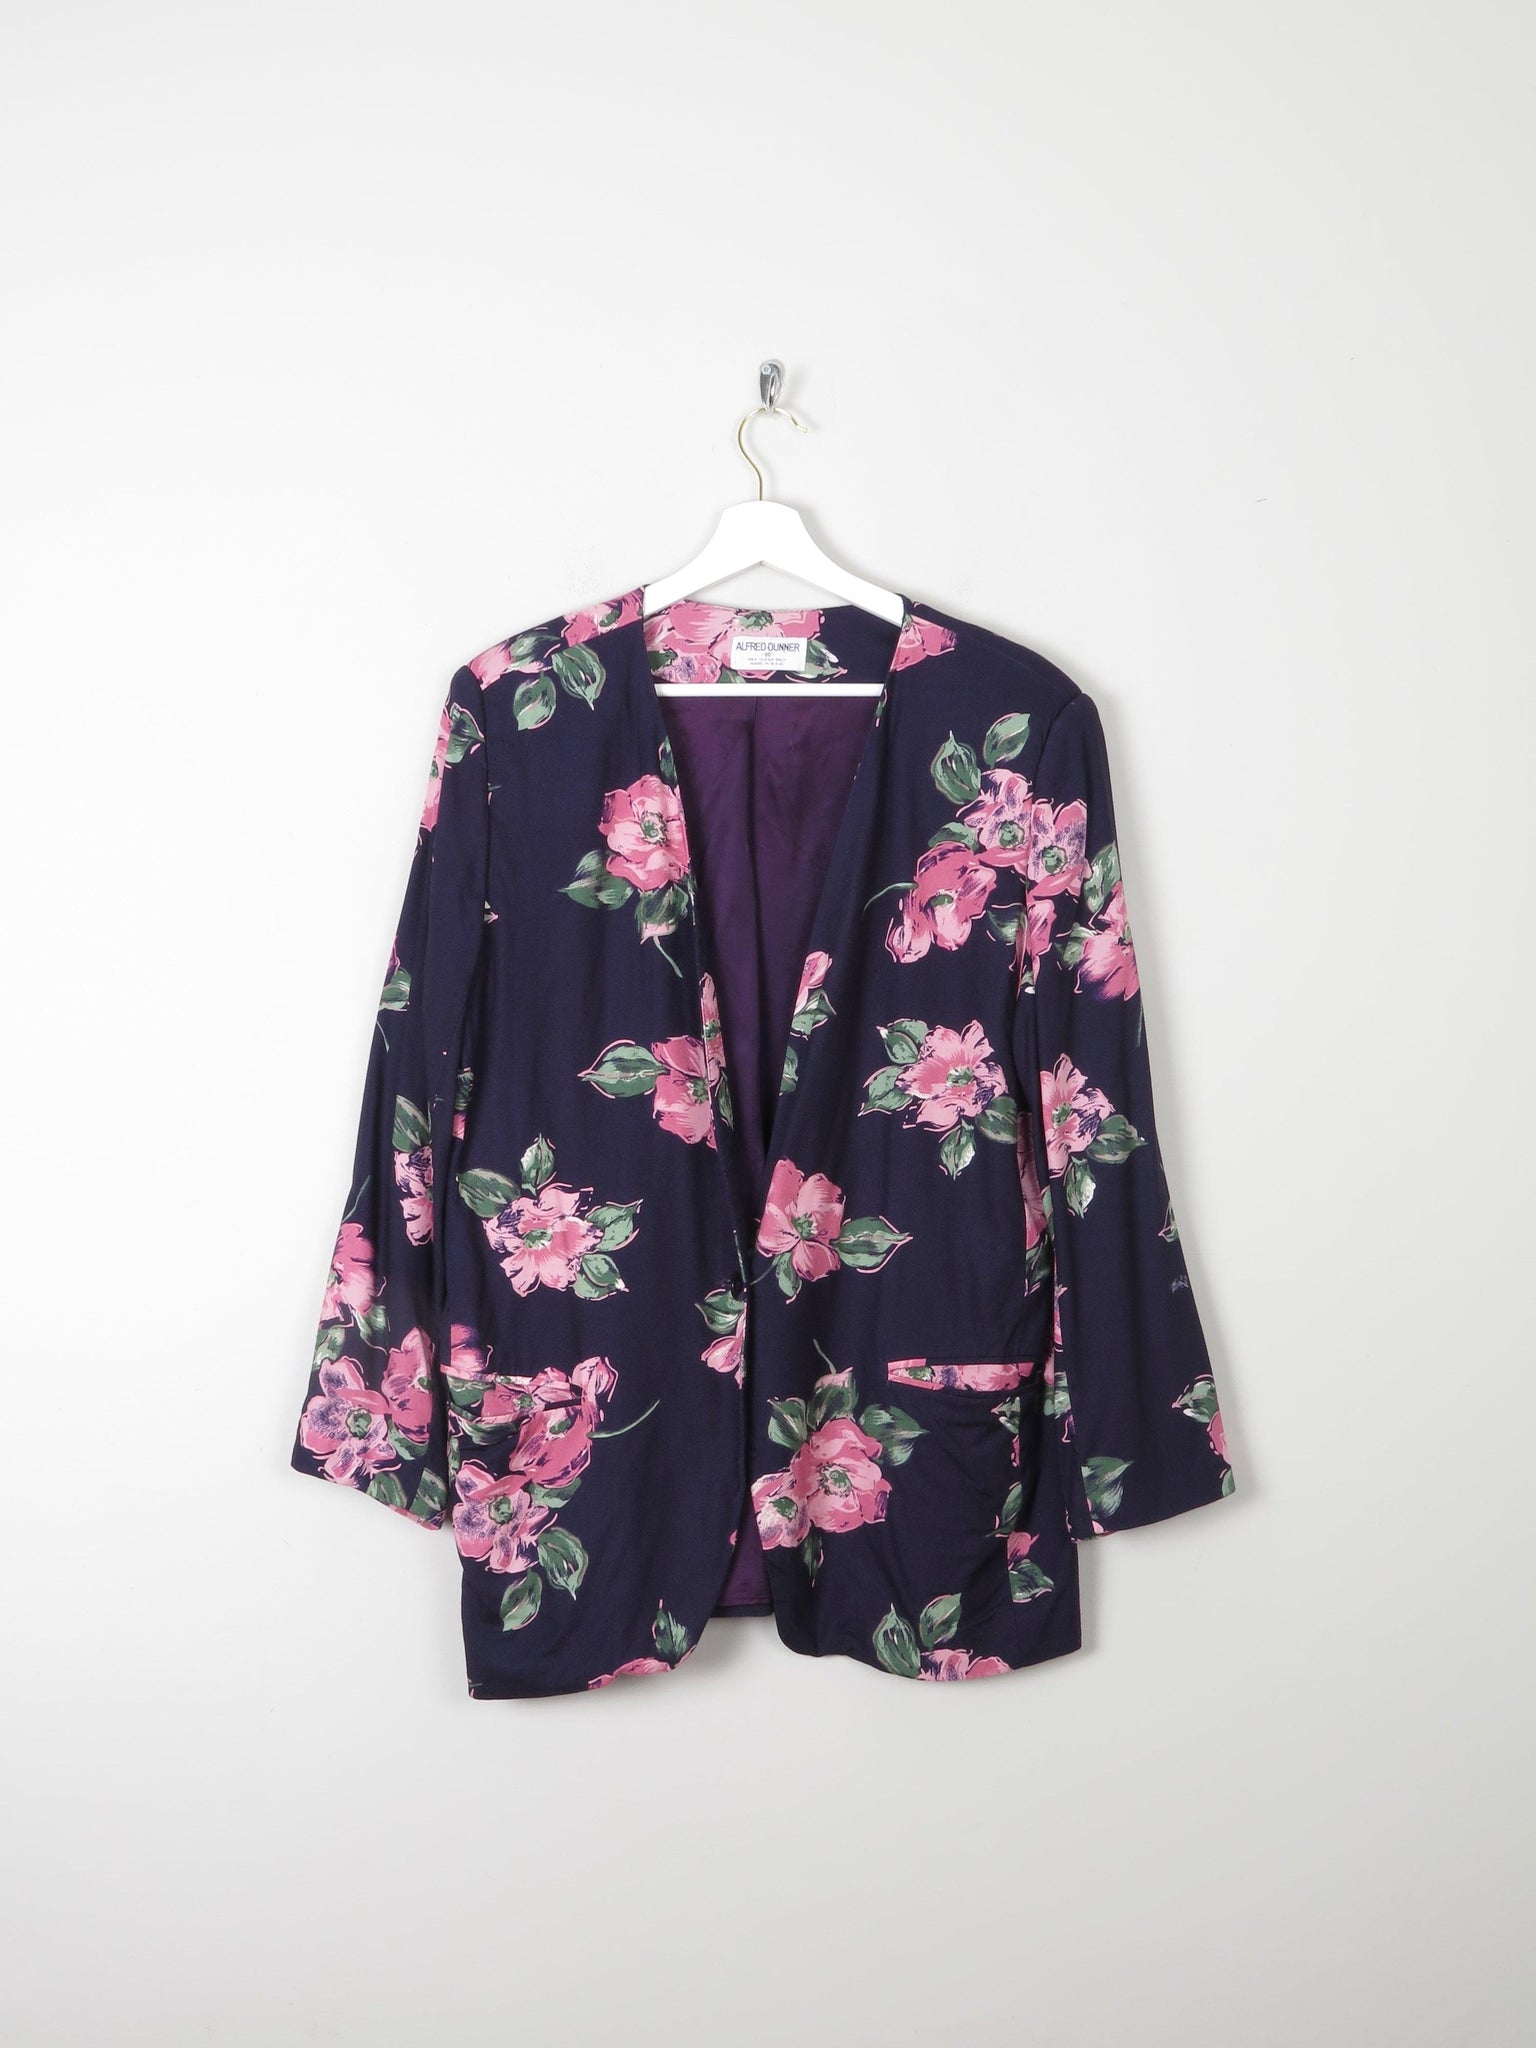 Women's Summer Floral Vintage Jacket M - The Harlequin